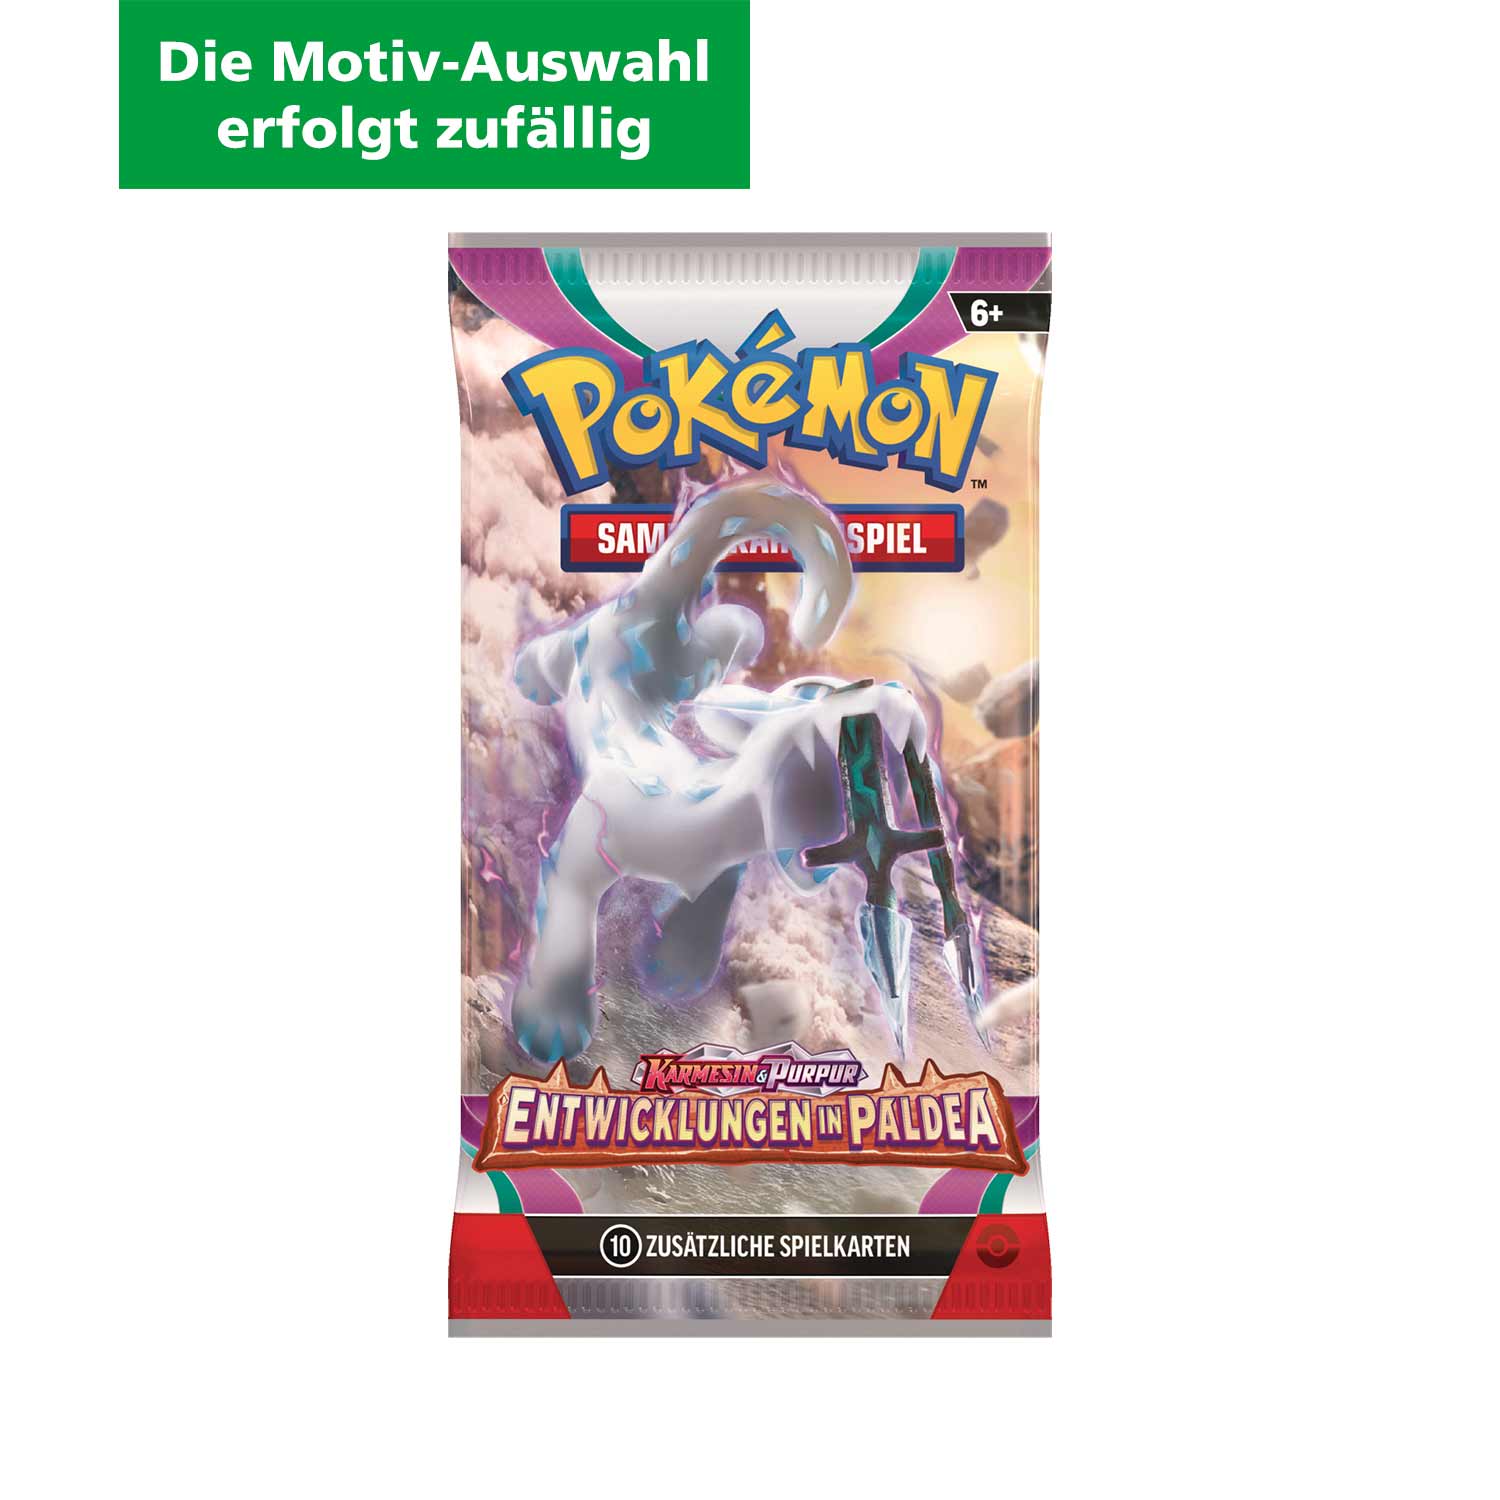 Pokémon Boosterpack Sammelkarten Karmesin & Purpur - Entwicklungen in Paldea (Motivauswahl erfolgt zufällig)